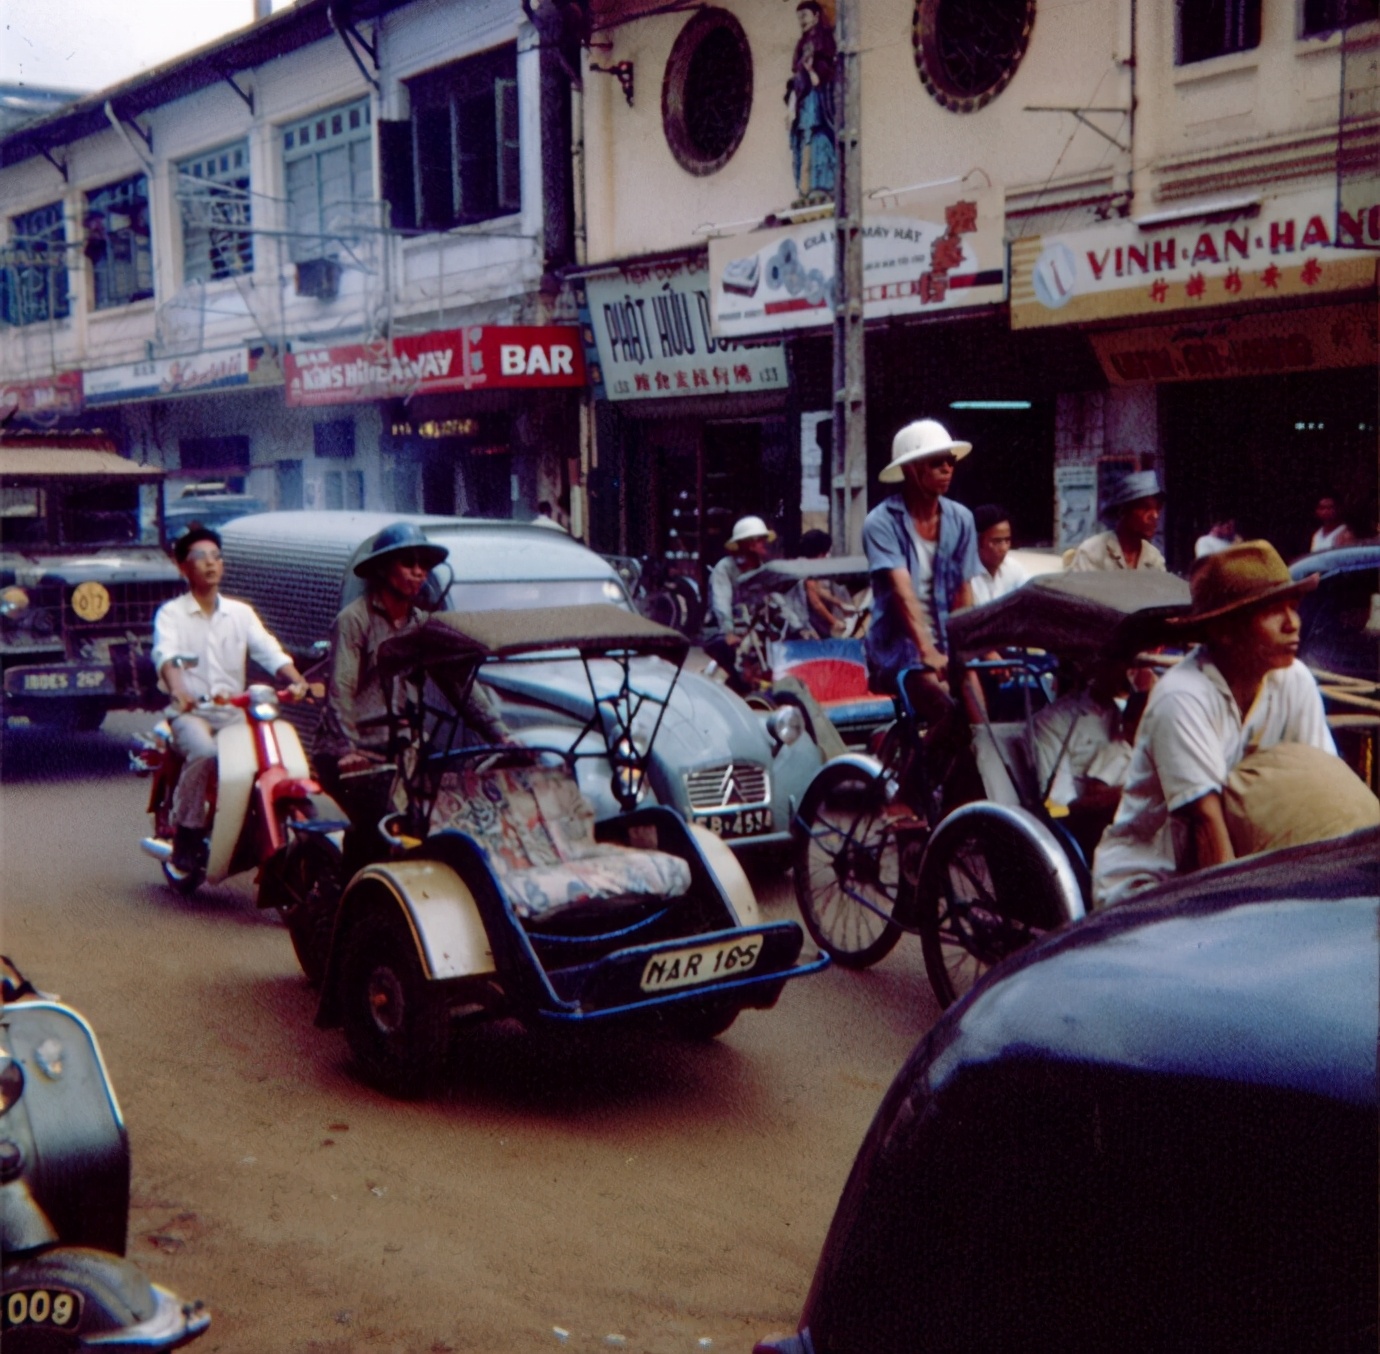 60年代的越南西贡就如此繁华 大街上随处可见汽车 摩托车 Mp头条